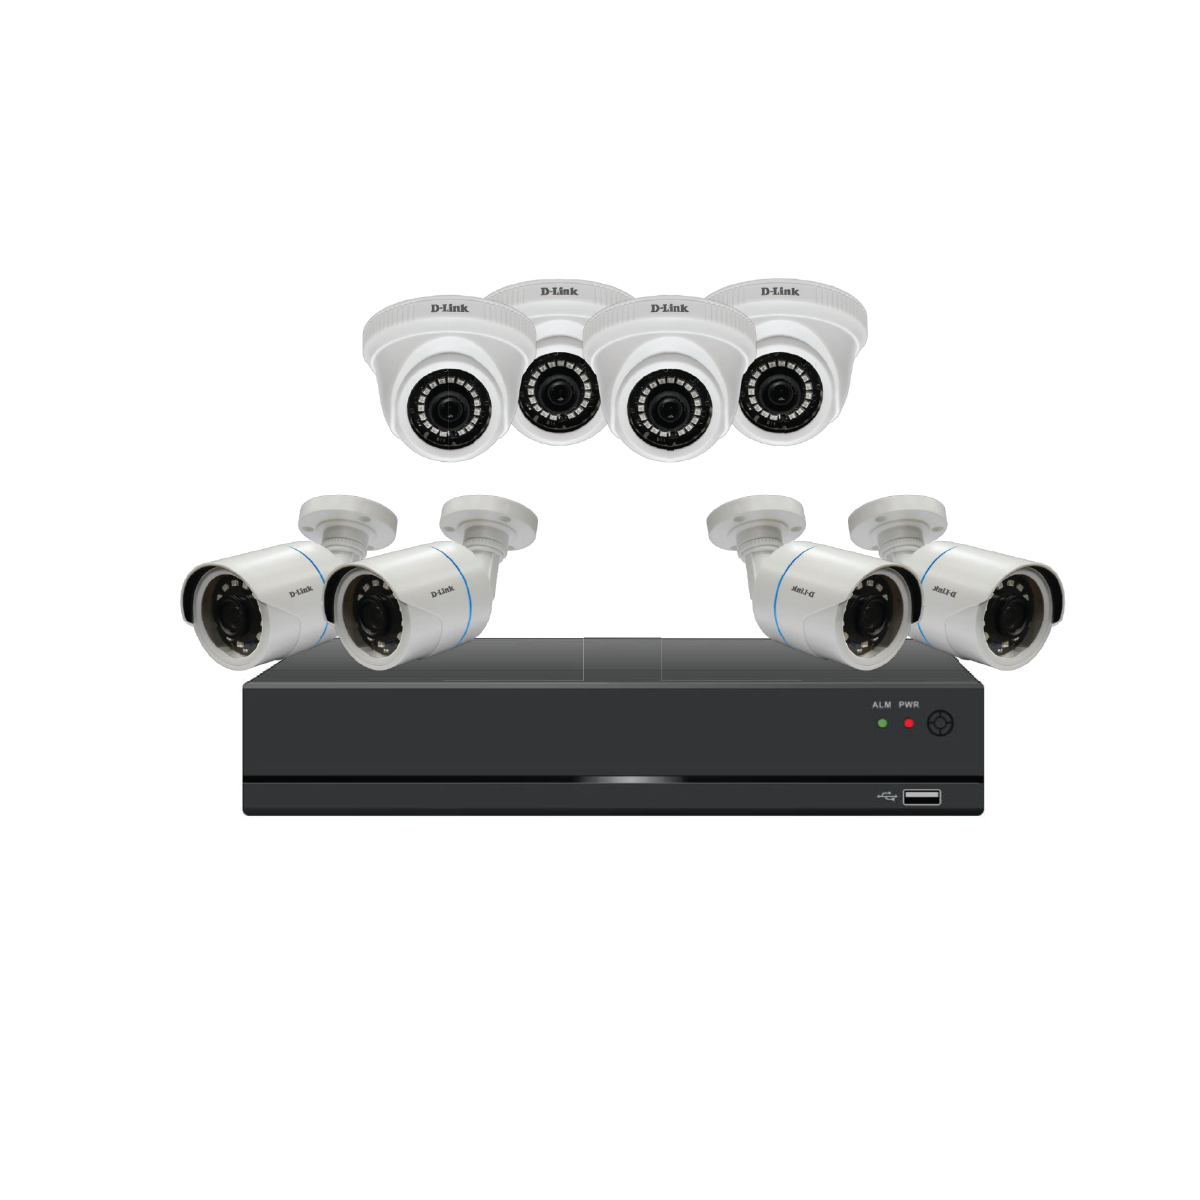 D-Link_8 Channel Analog CCTV Surveillance Kit (DCS-P8)